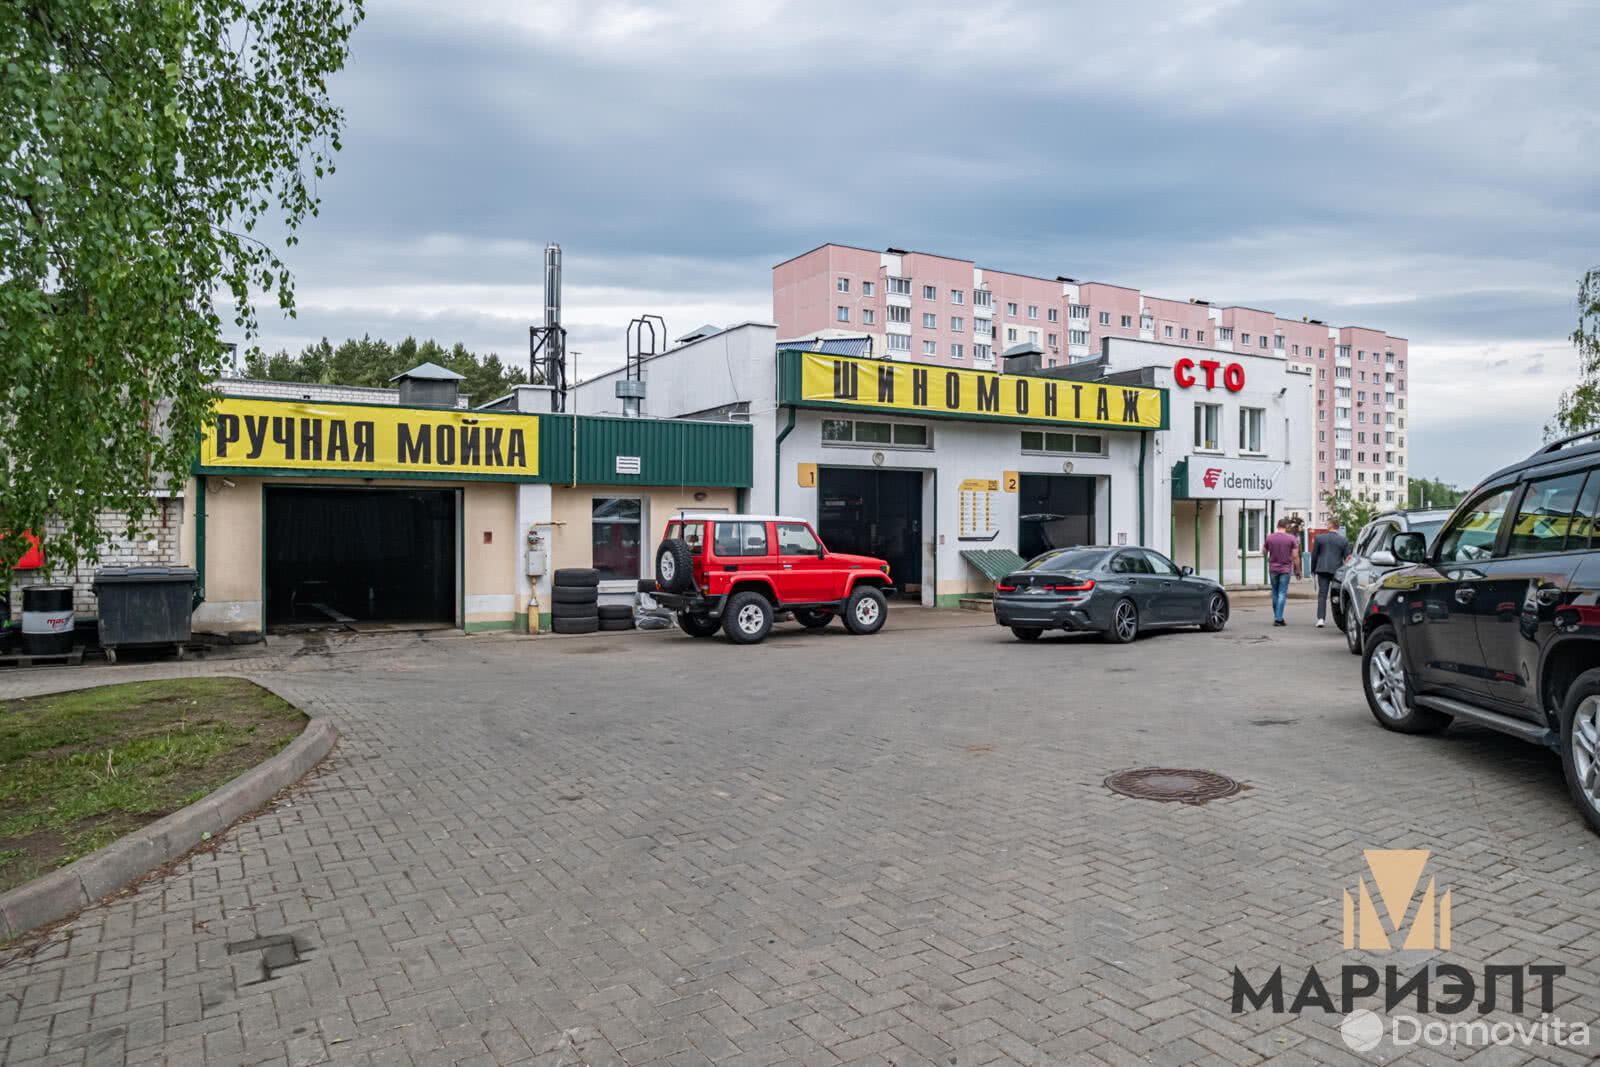 Купить помещение под сферу услуг в Минске, ул. Рогачевская, д. 17 - фото 1